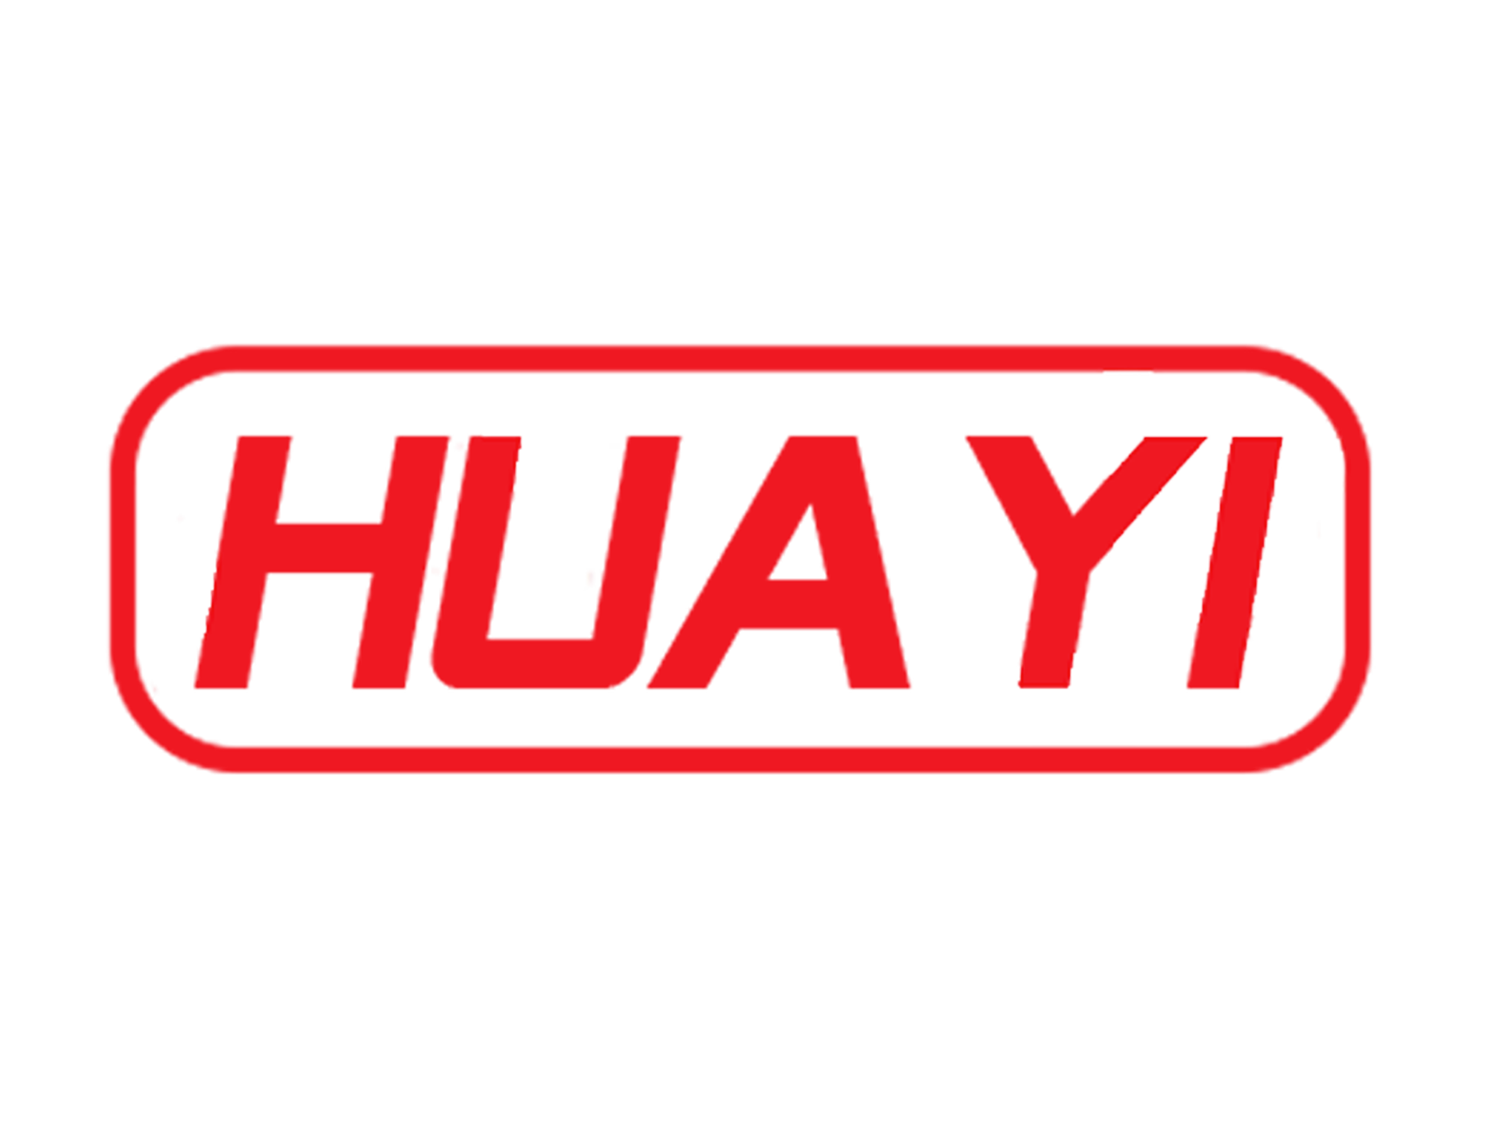 huayi